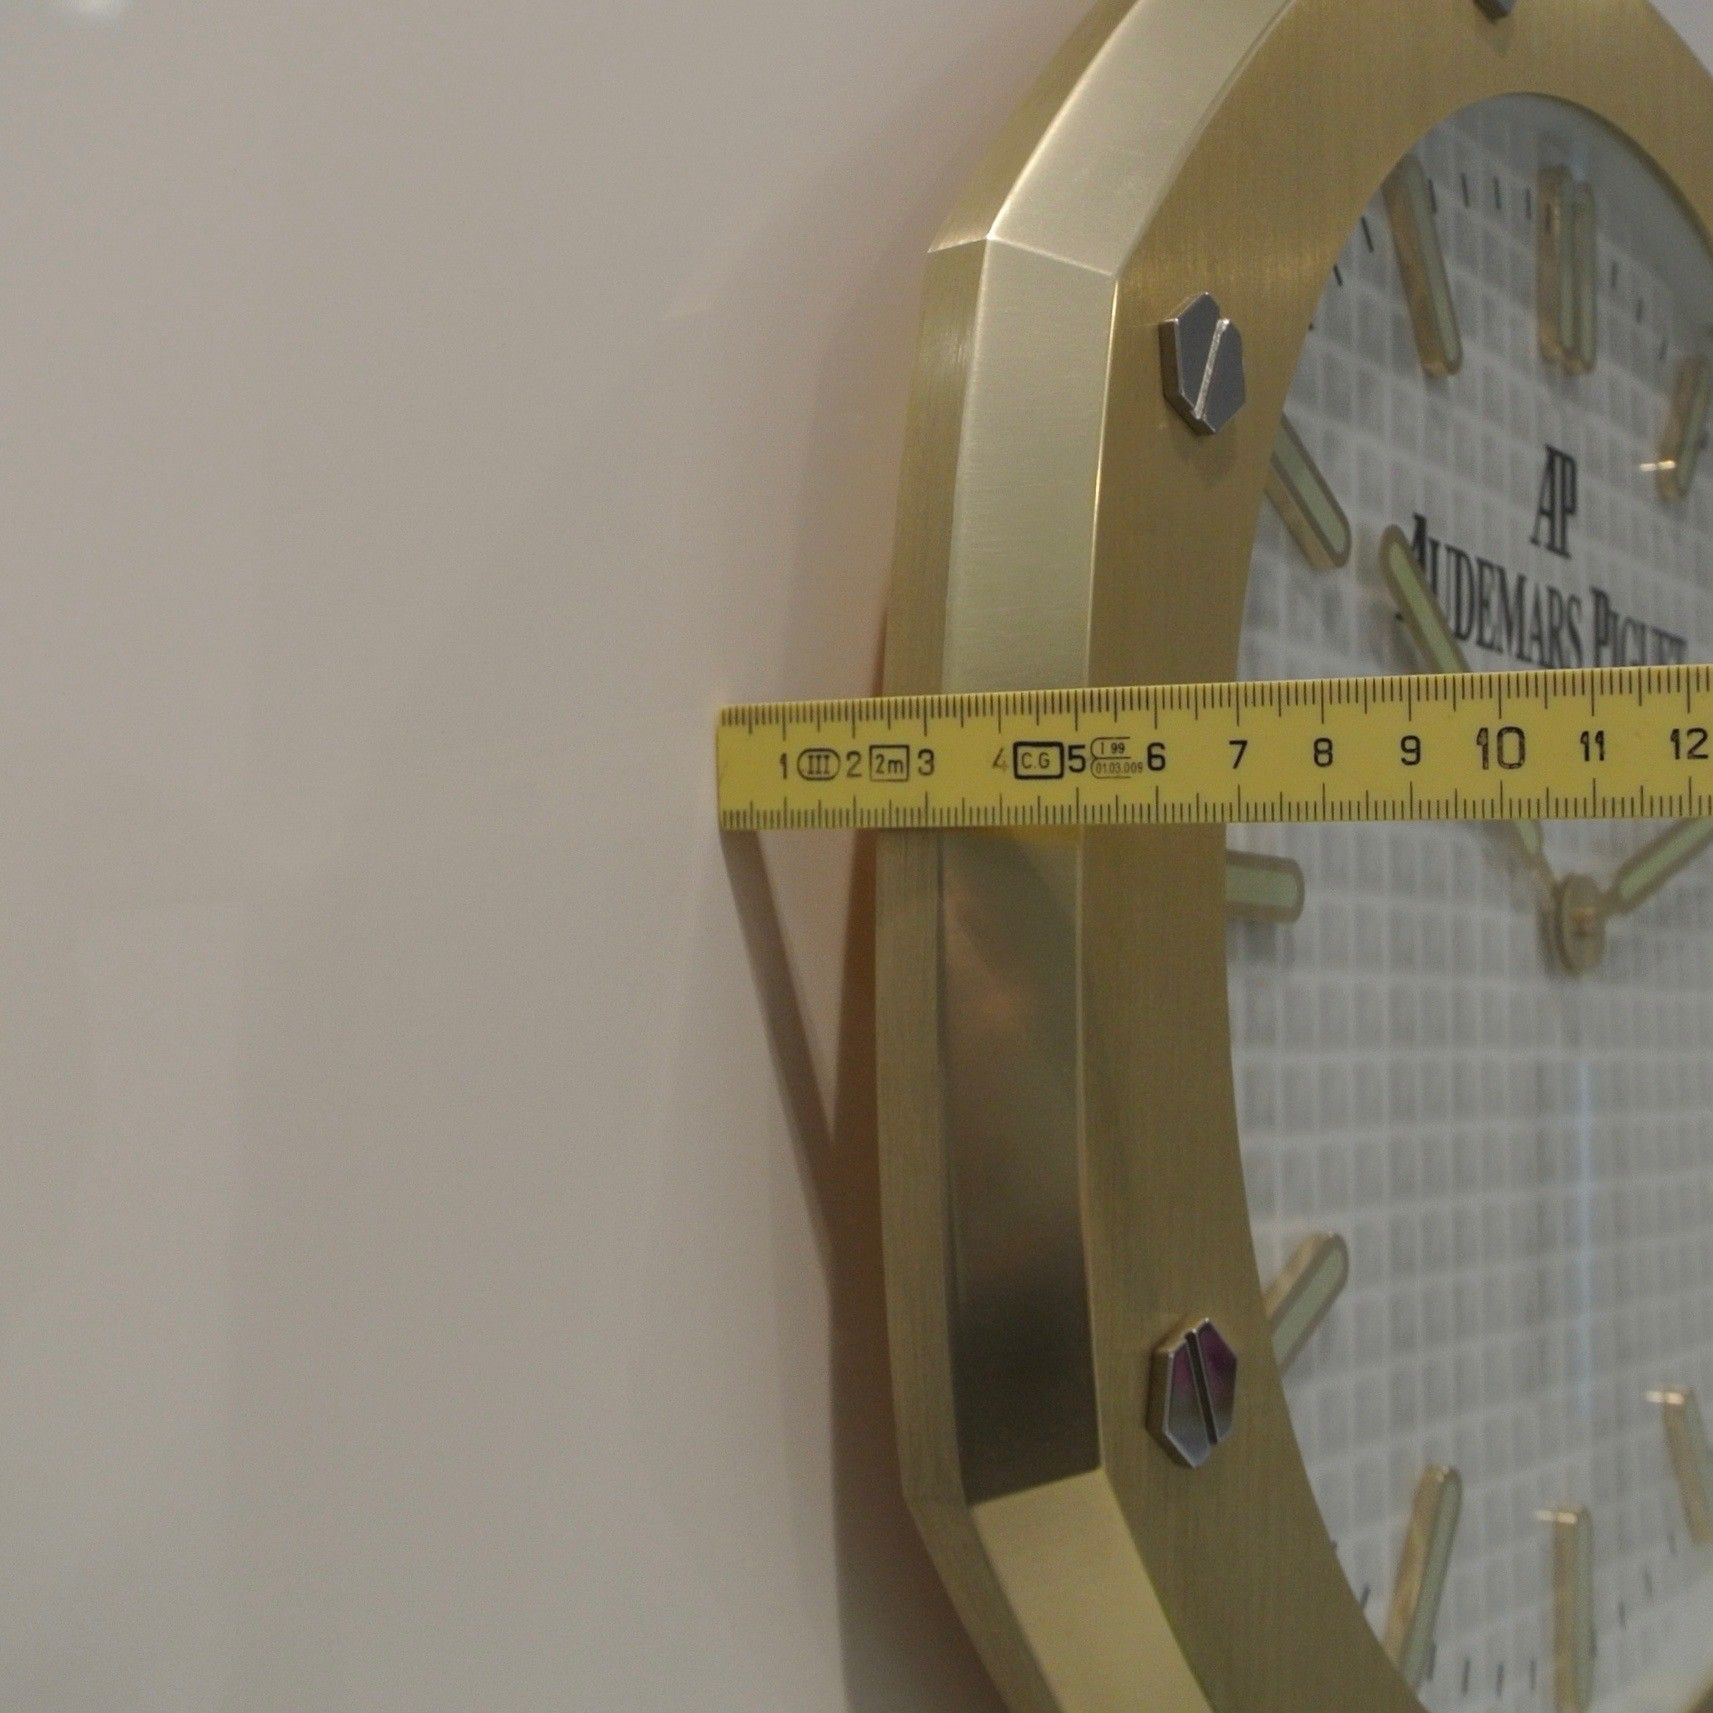 Audemars Piguet Original Wall Clock Big Model Type Plated Yellow Gold